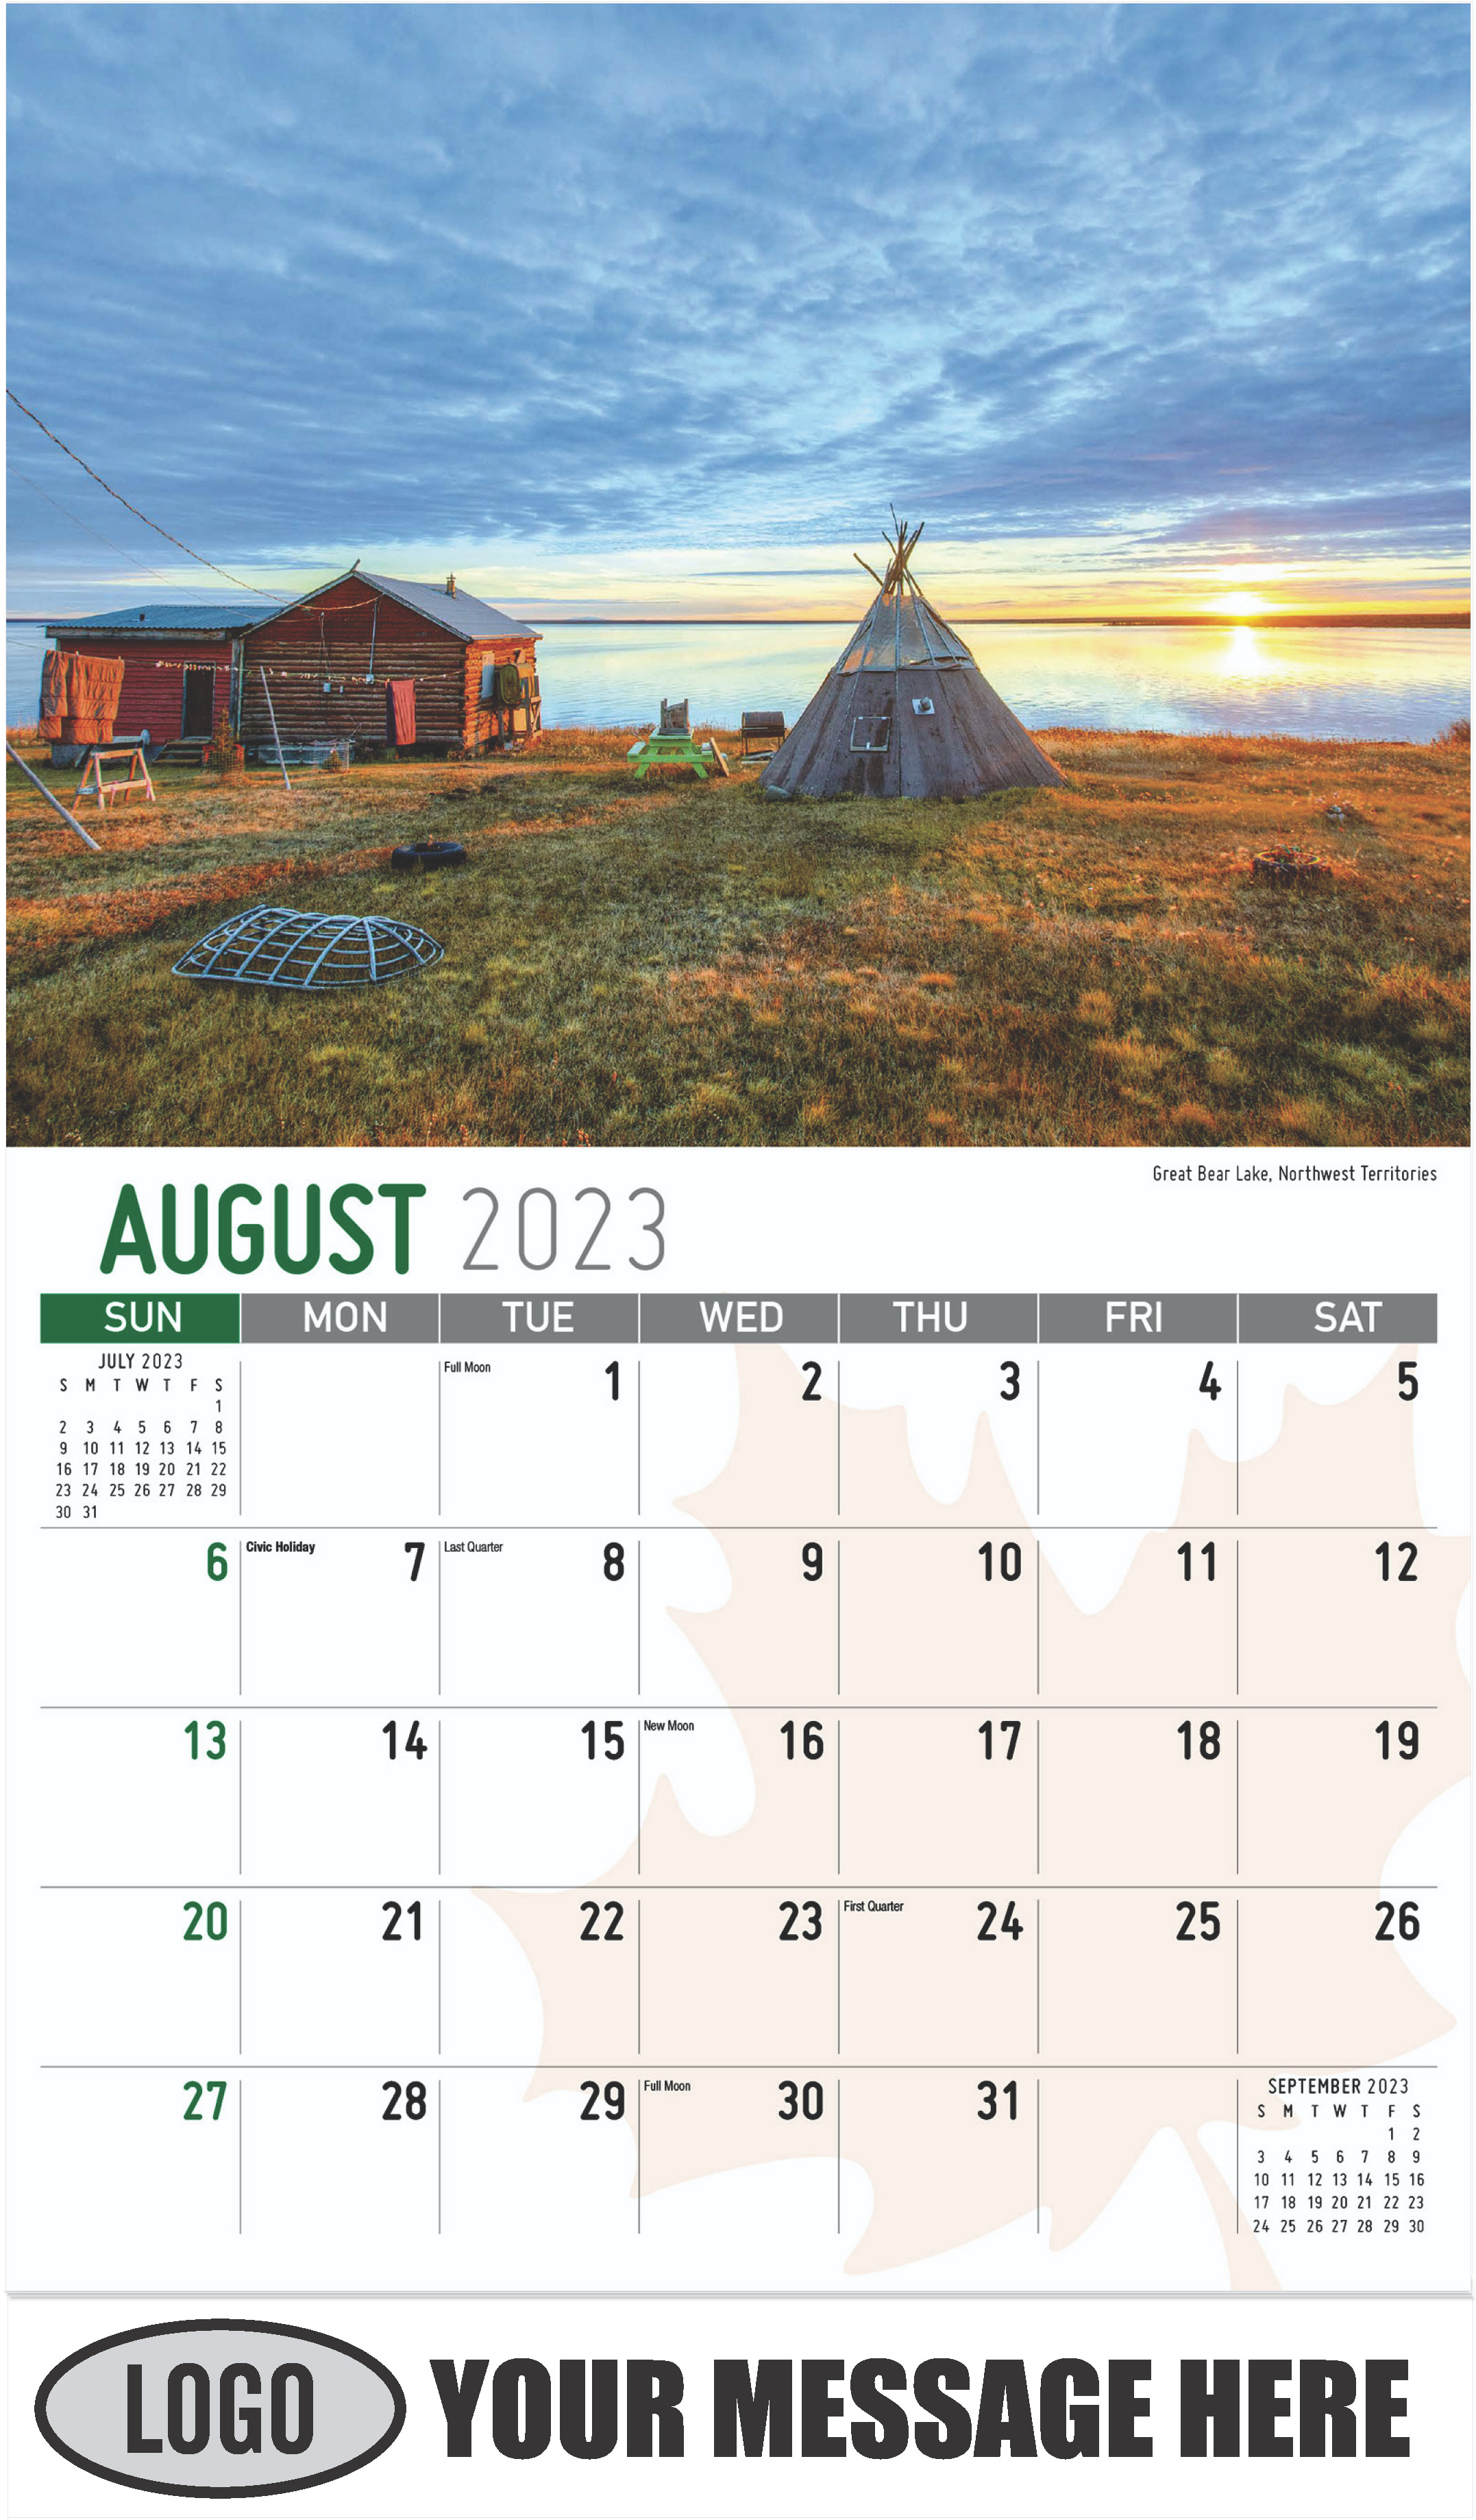 Aurora Borealis, Northwest Territories - August - Scenes of Canada 2023 Promotional Calendar